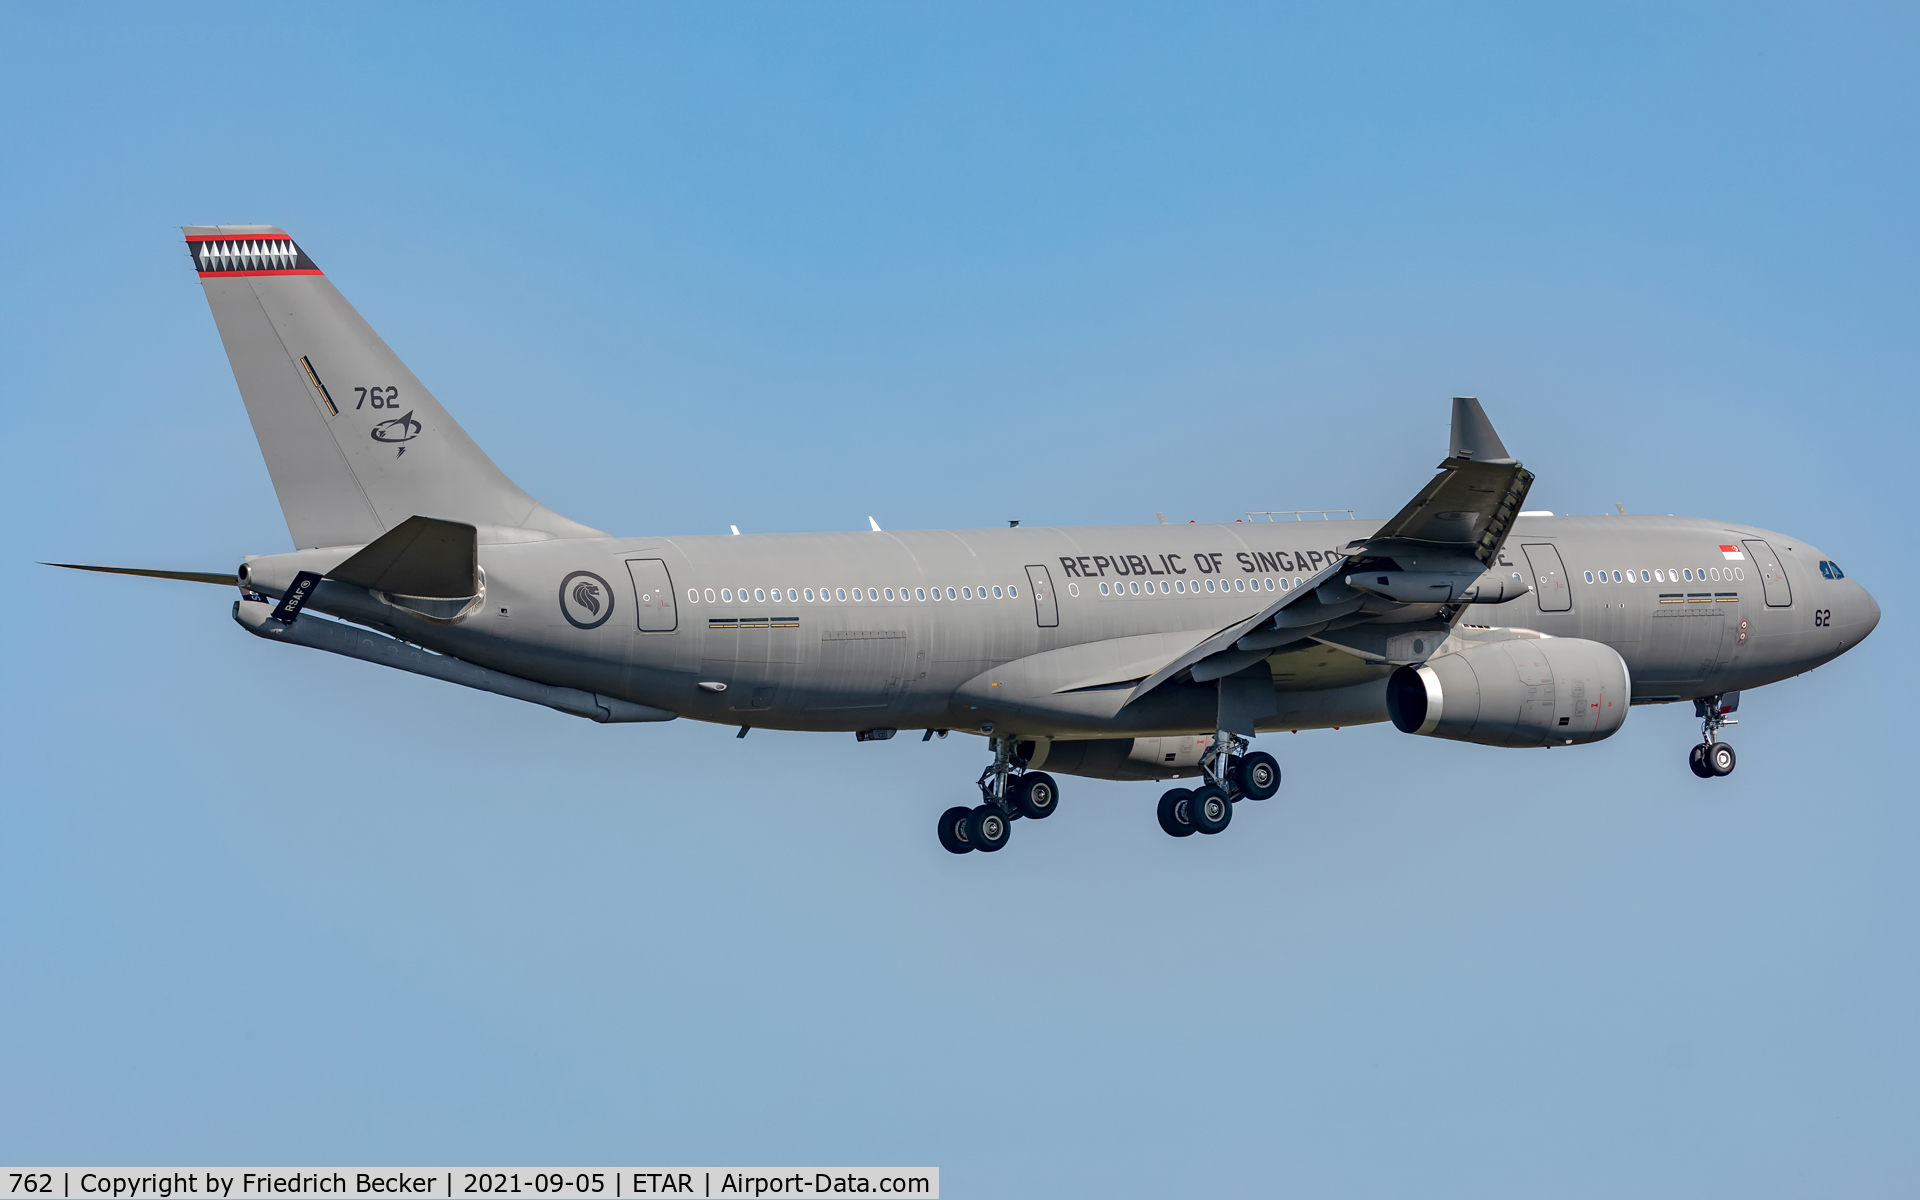 762, 2018 Airbus A330-243-MRTT C/N 1799, on final RW08